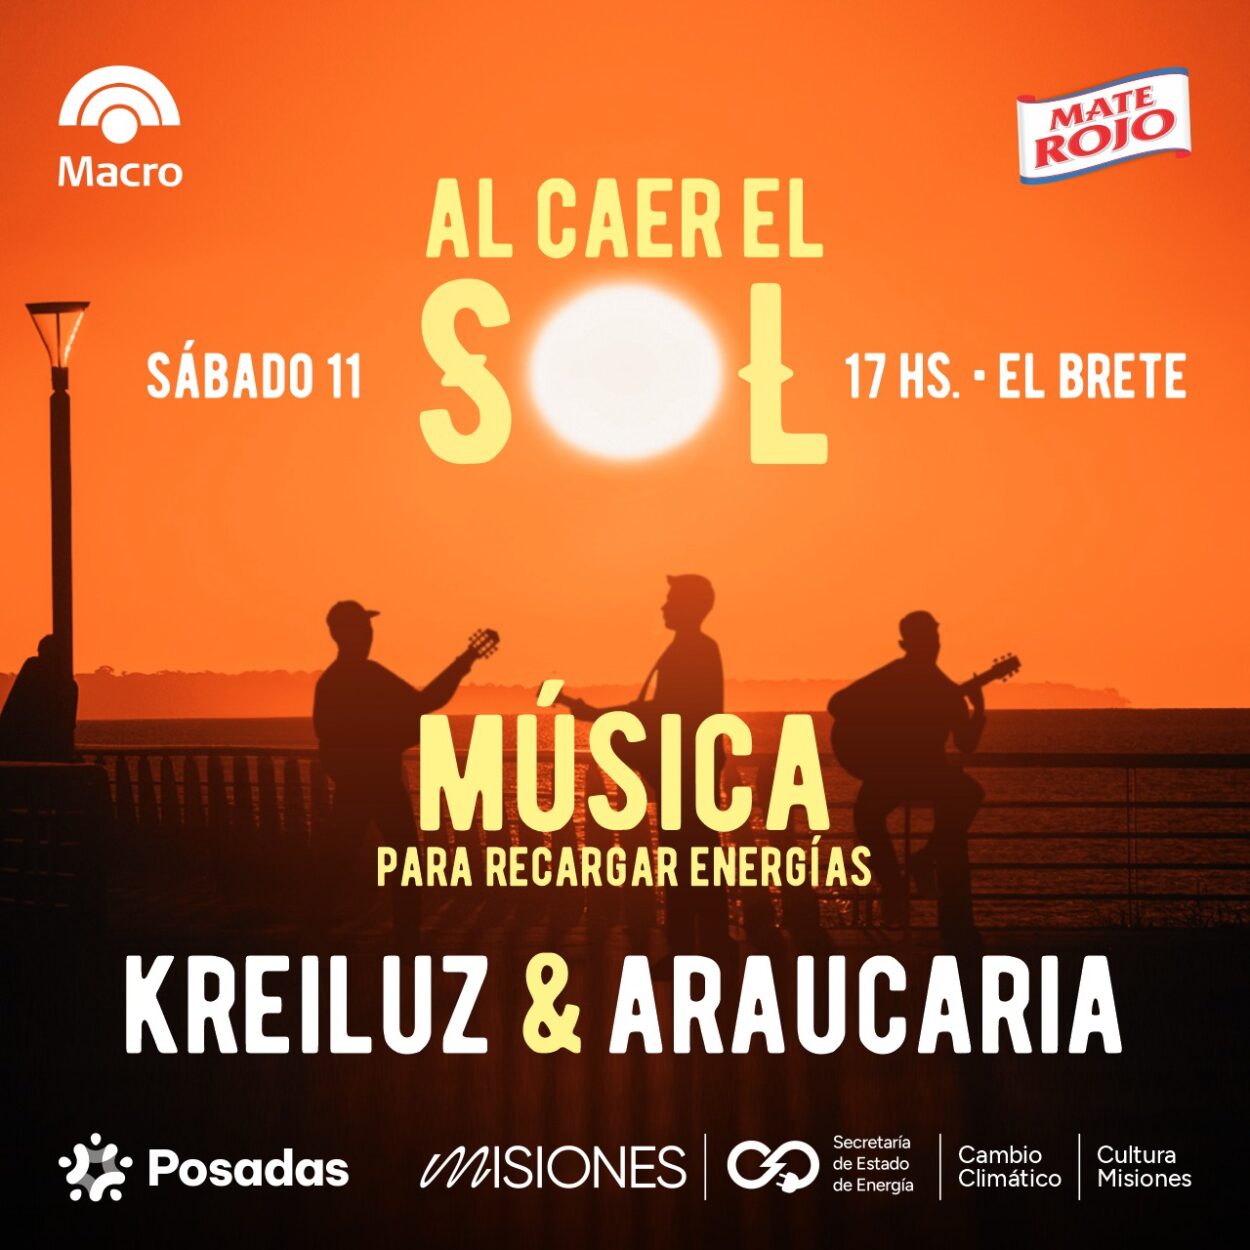 Araucaria y Kreiluz aportarán su energía musical este sábado en El Brete imagen-12